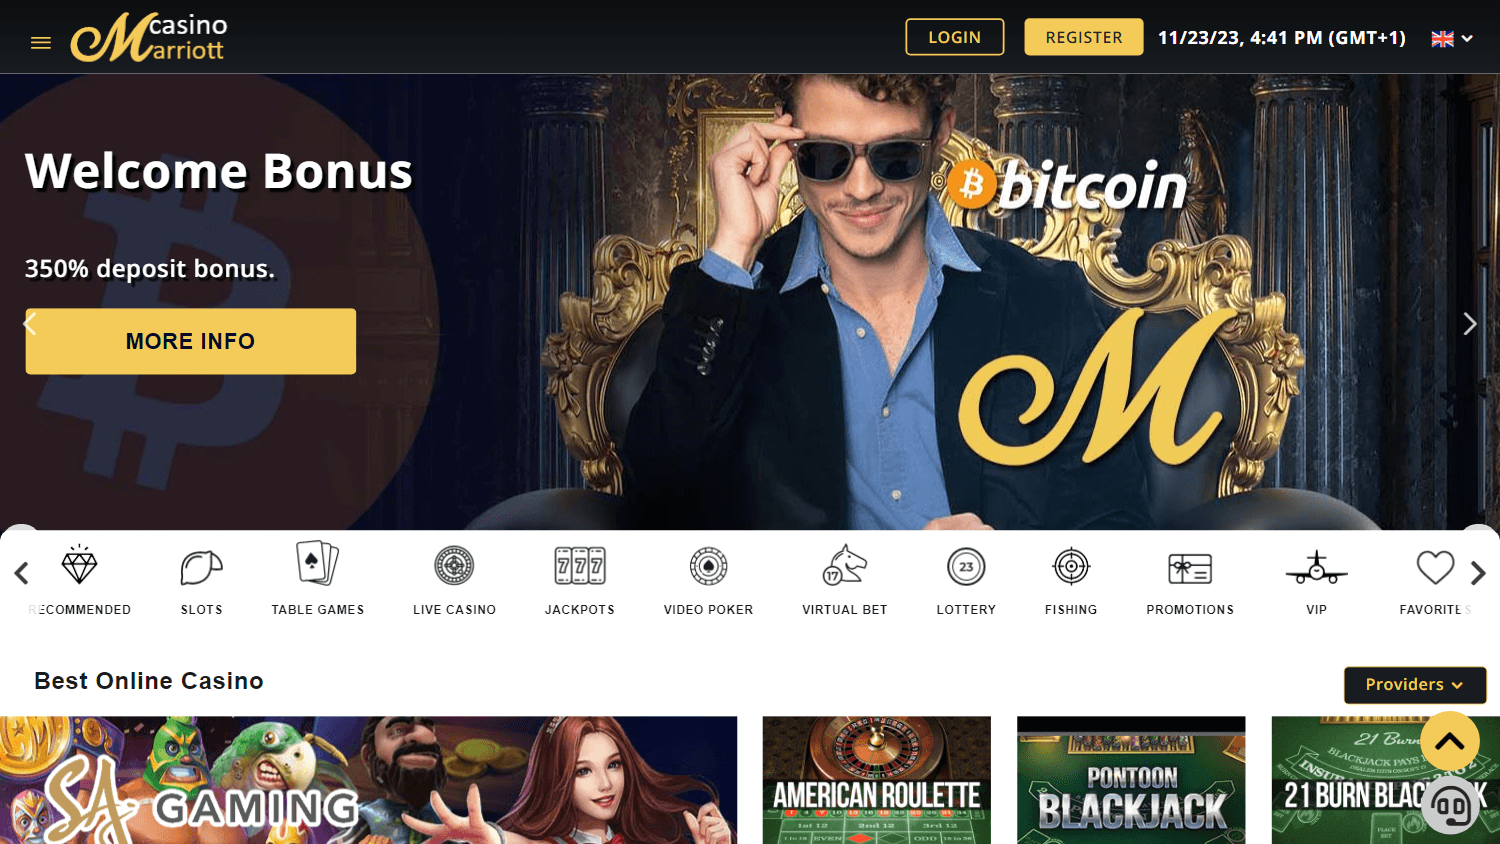 casinomarriott_homepage_desktop